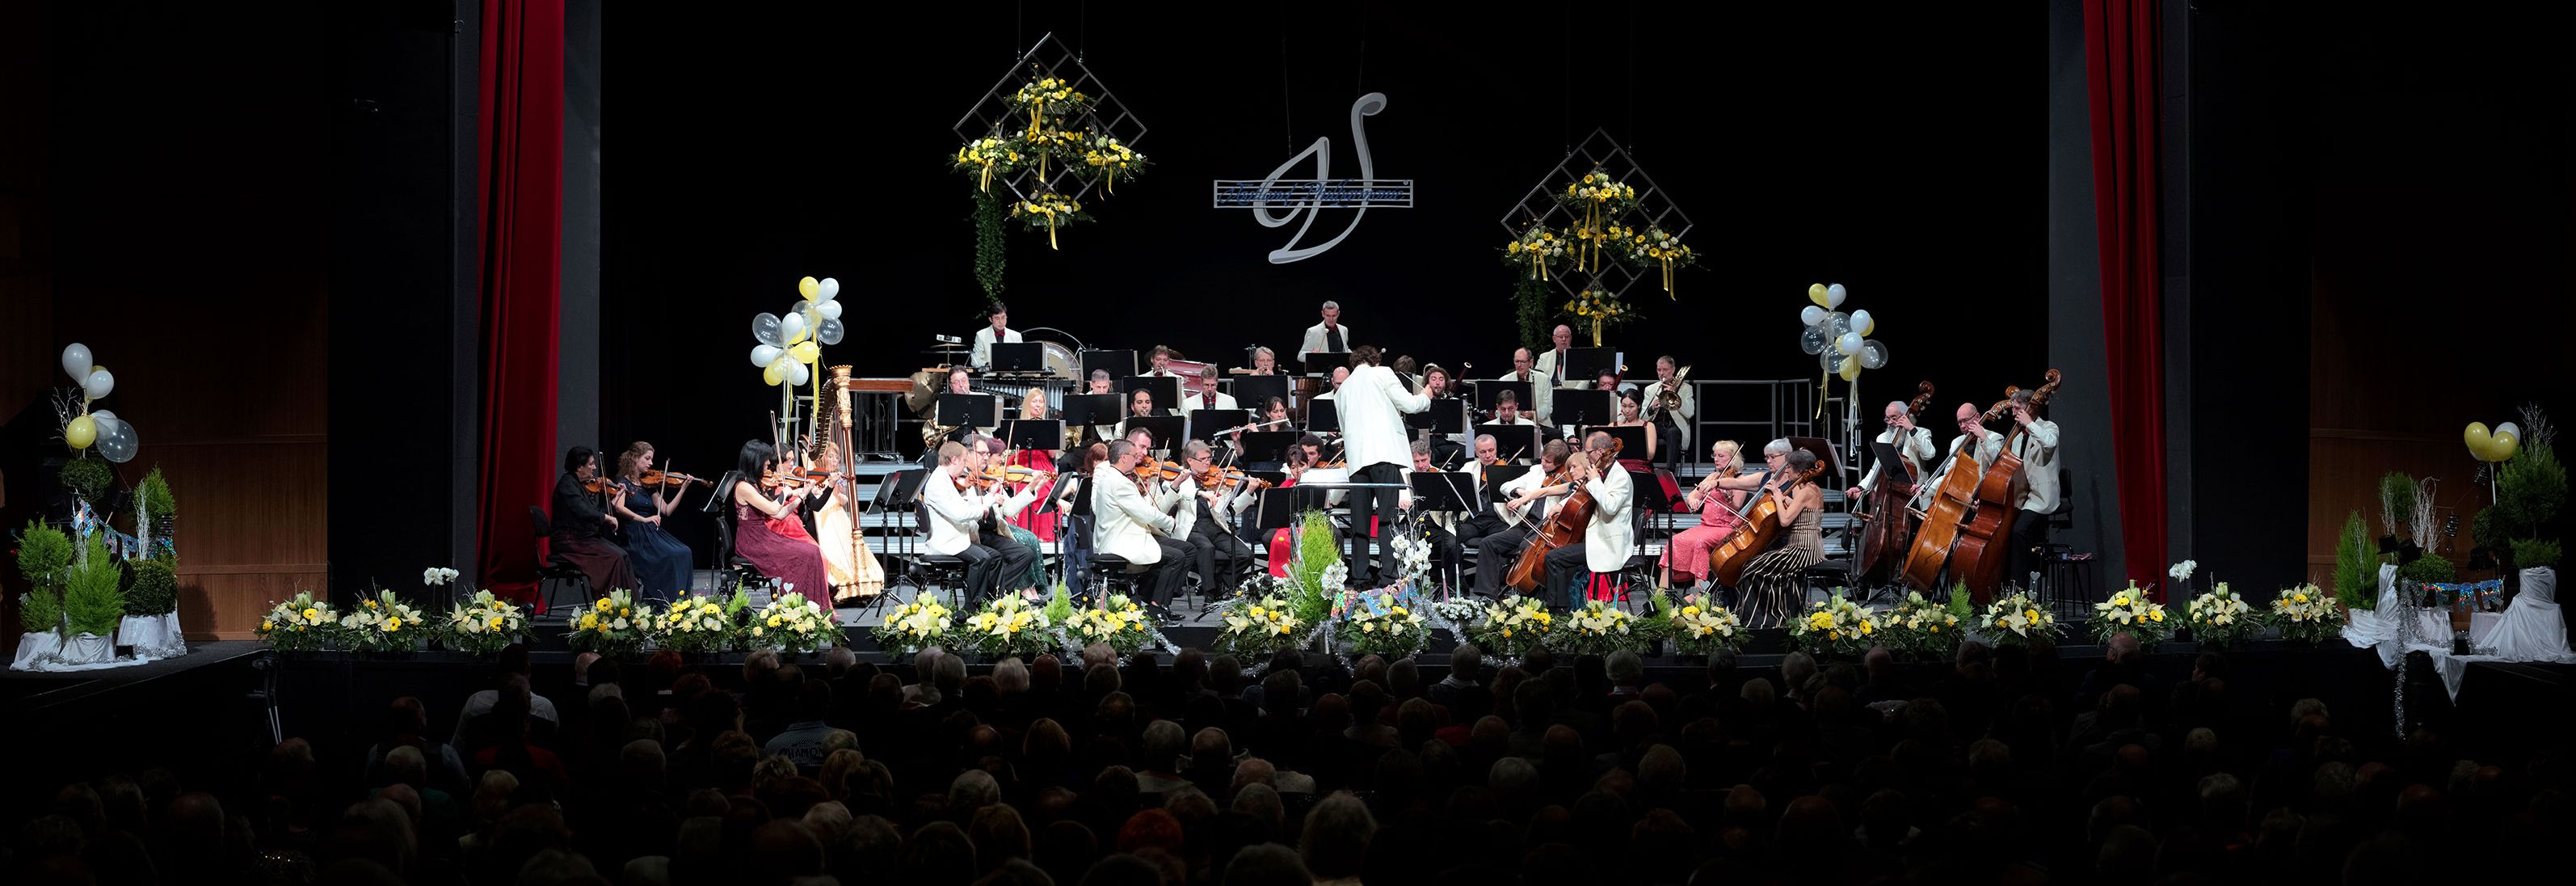 Die Vogtland Philharmonie gastiert zum Neujahrskonzert am Samstag, 15. Januar, 16 Uhr, erstmals in der Neunburger Schwarzachtalhalle. Foto: Christian Freund